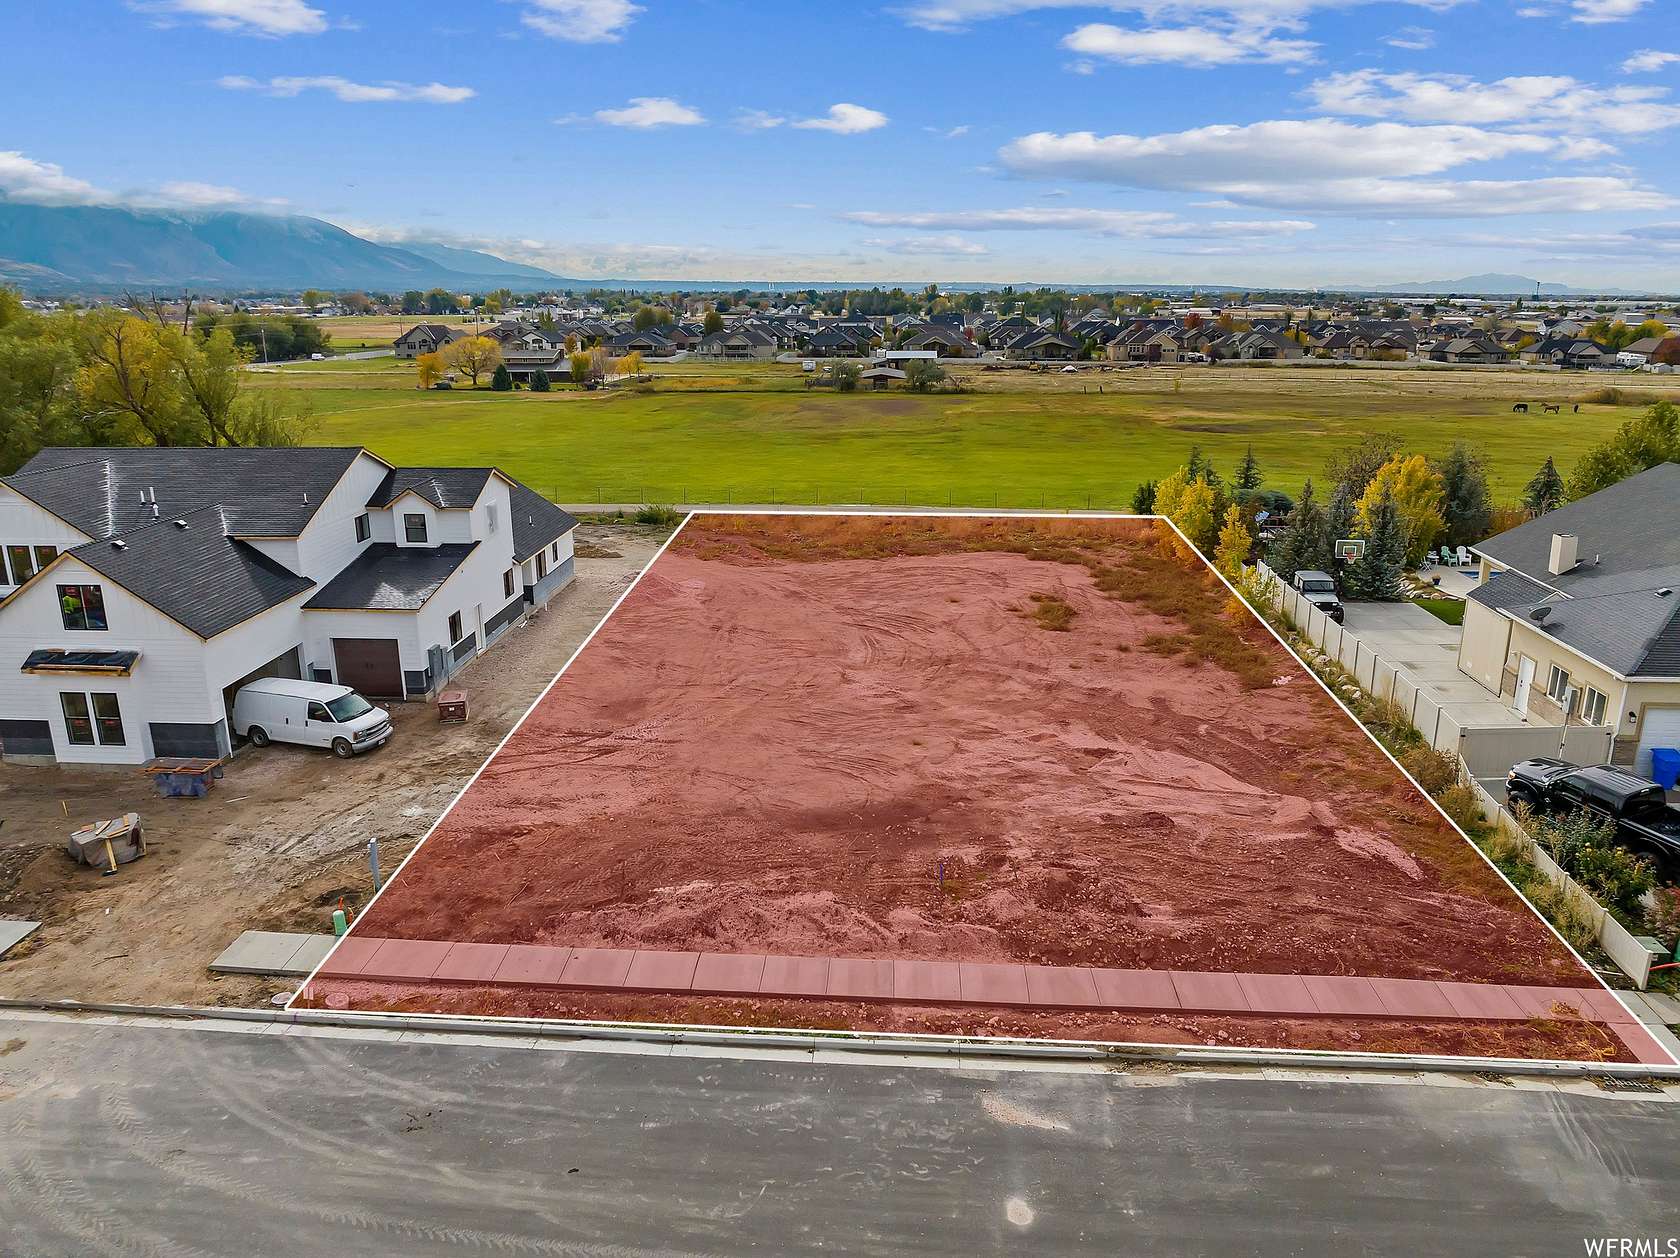 0.5 Acres of Residential Land for Sale in Ogden, Utah